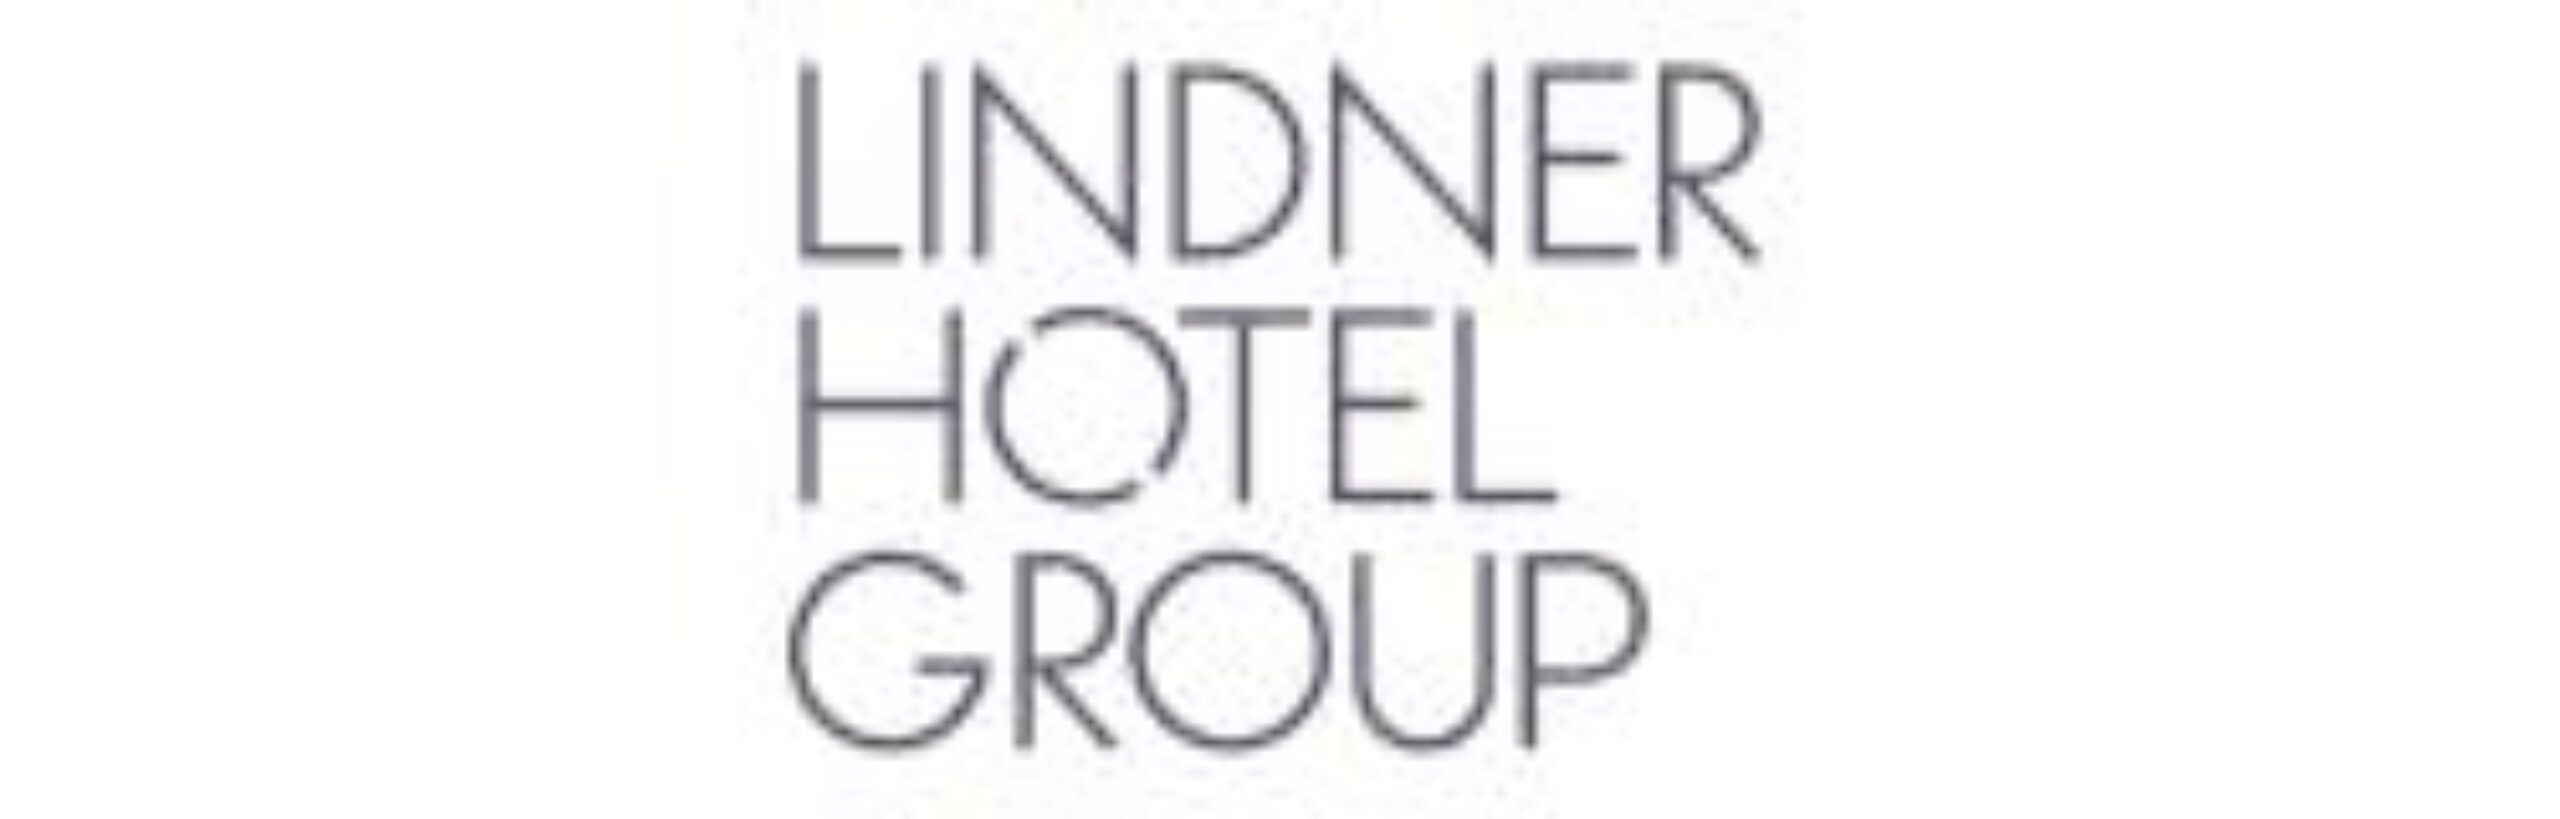 Lindner Hotel Group logo